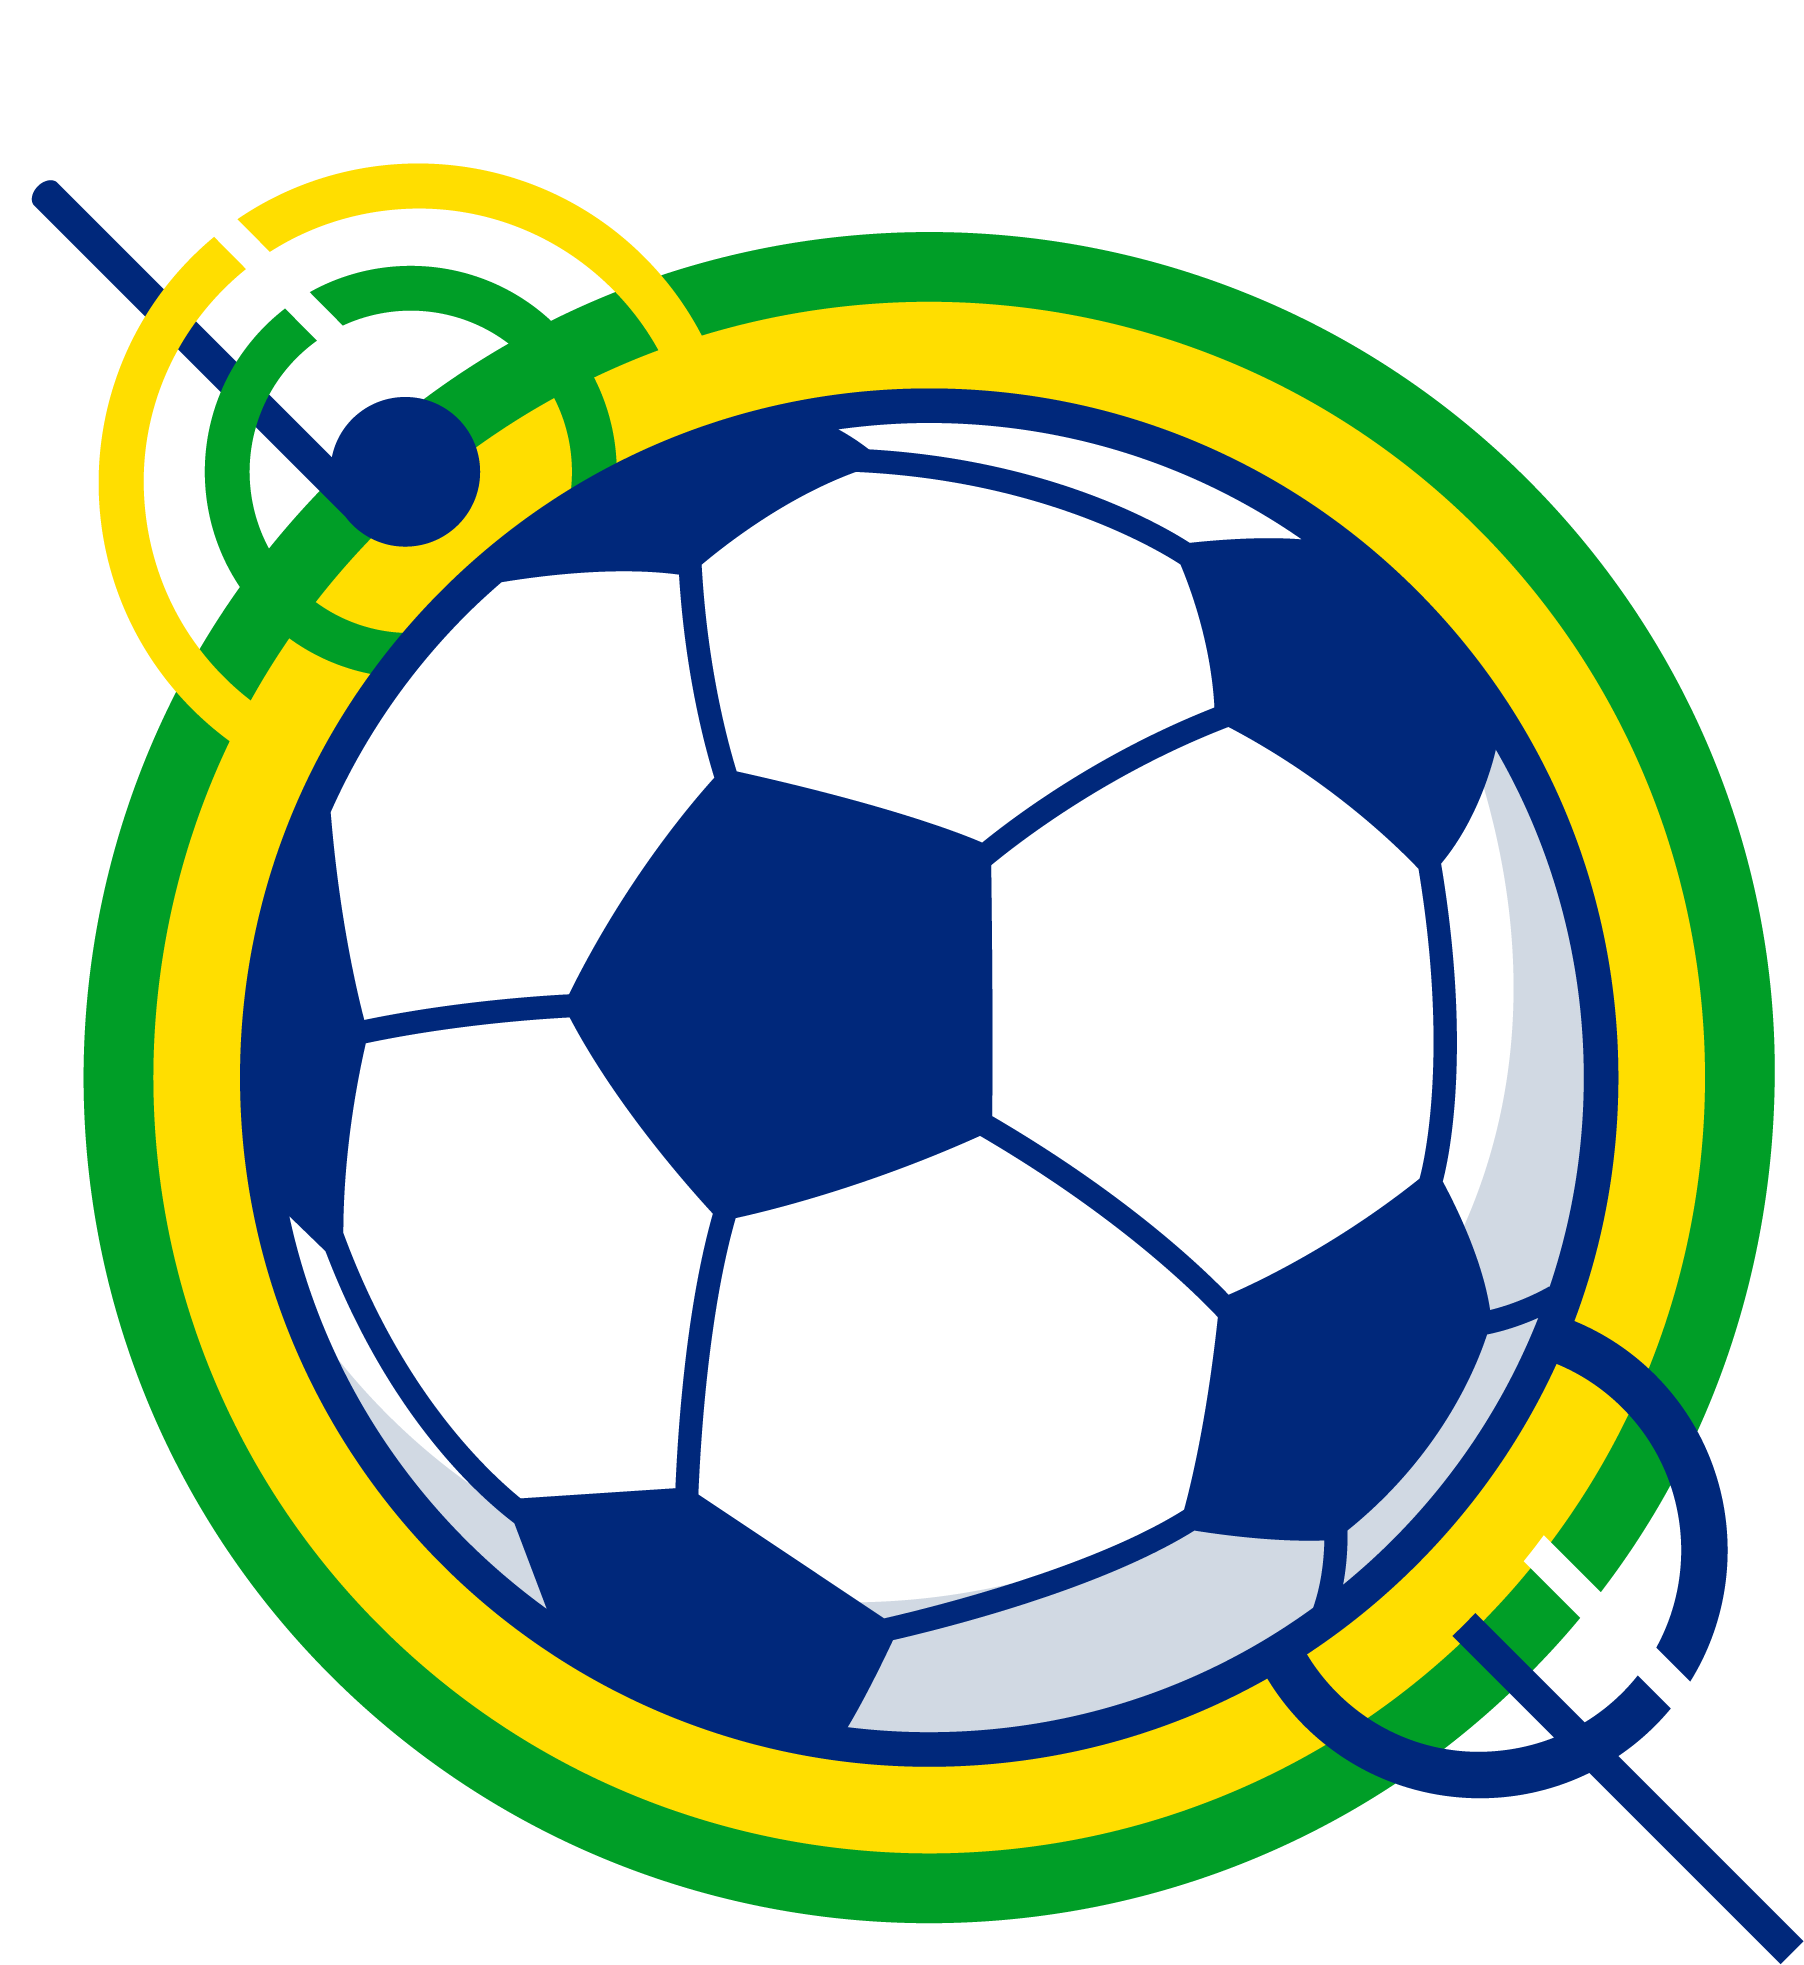 Brfutebol official logo.